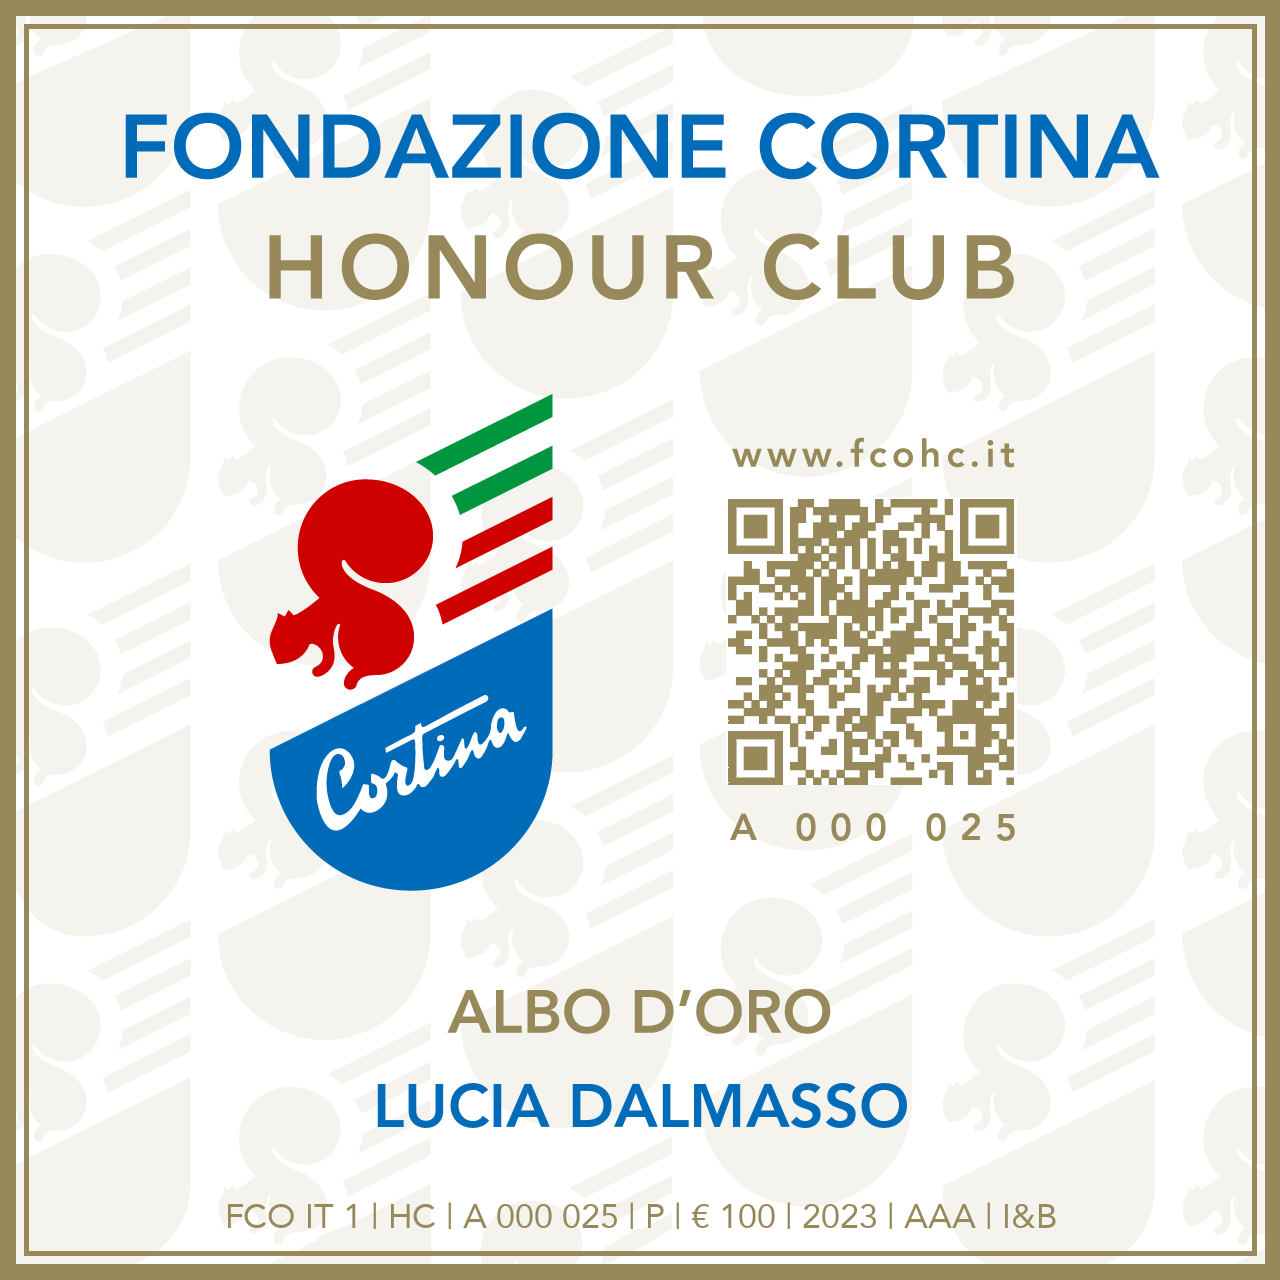 Fondazione Cortina Honour Club - Token Id A 000 025 - LUCIA DALMASSO